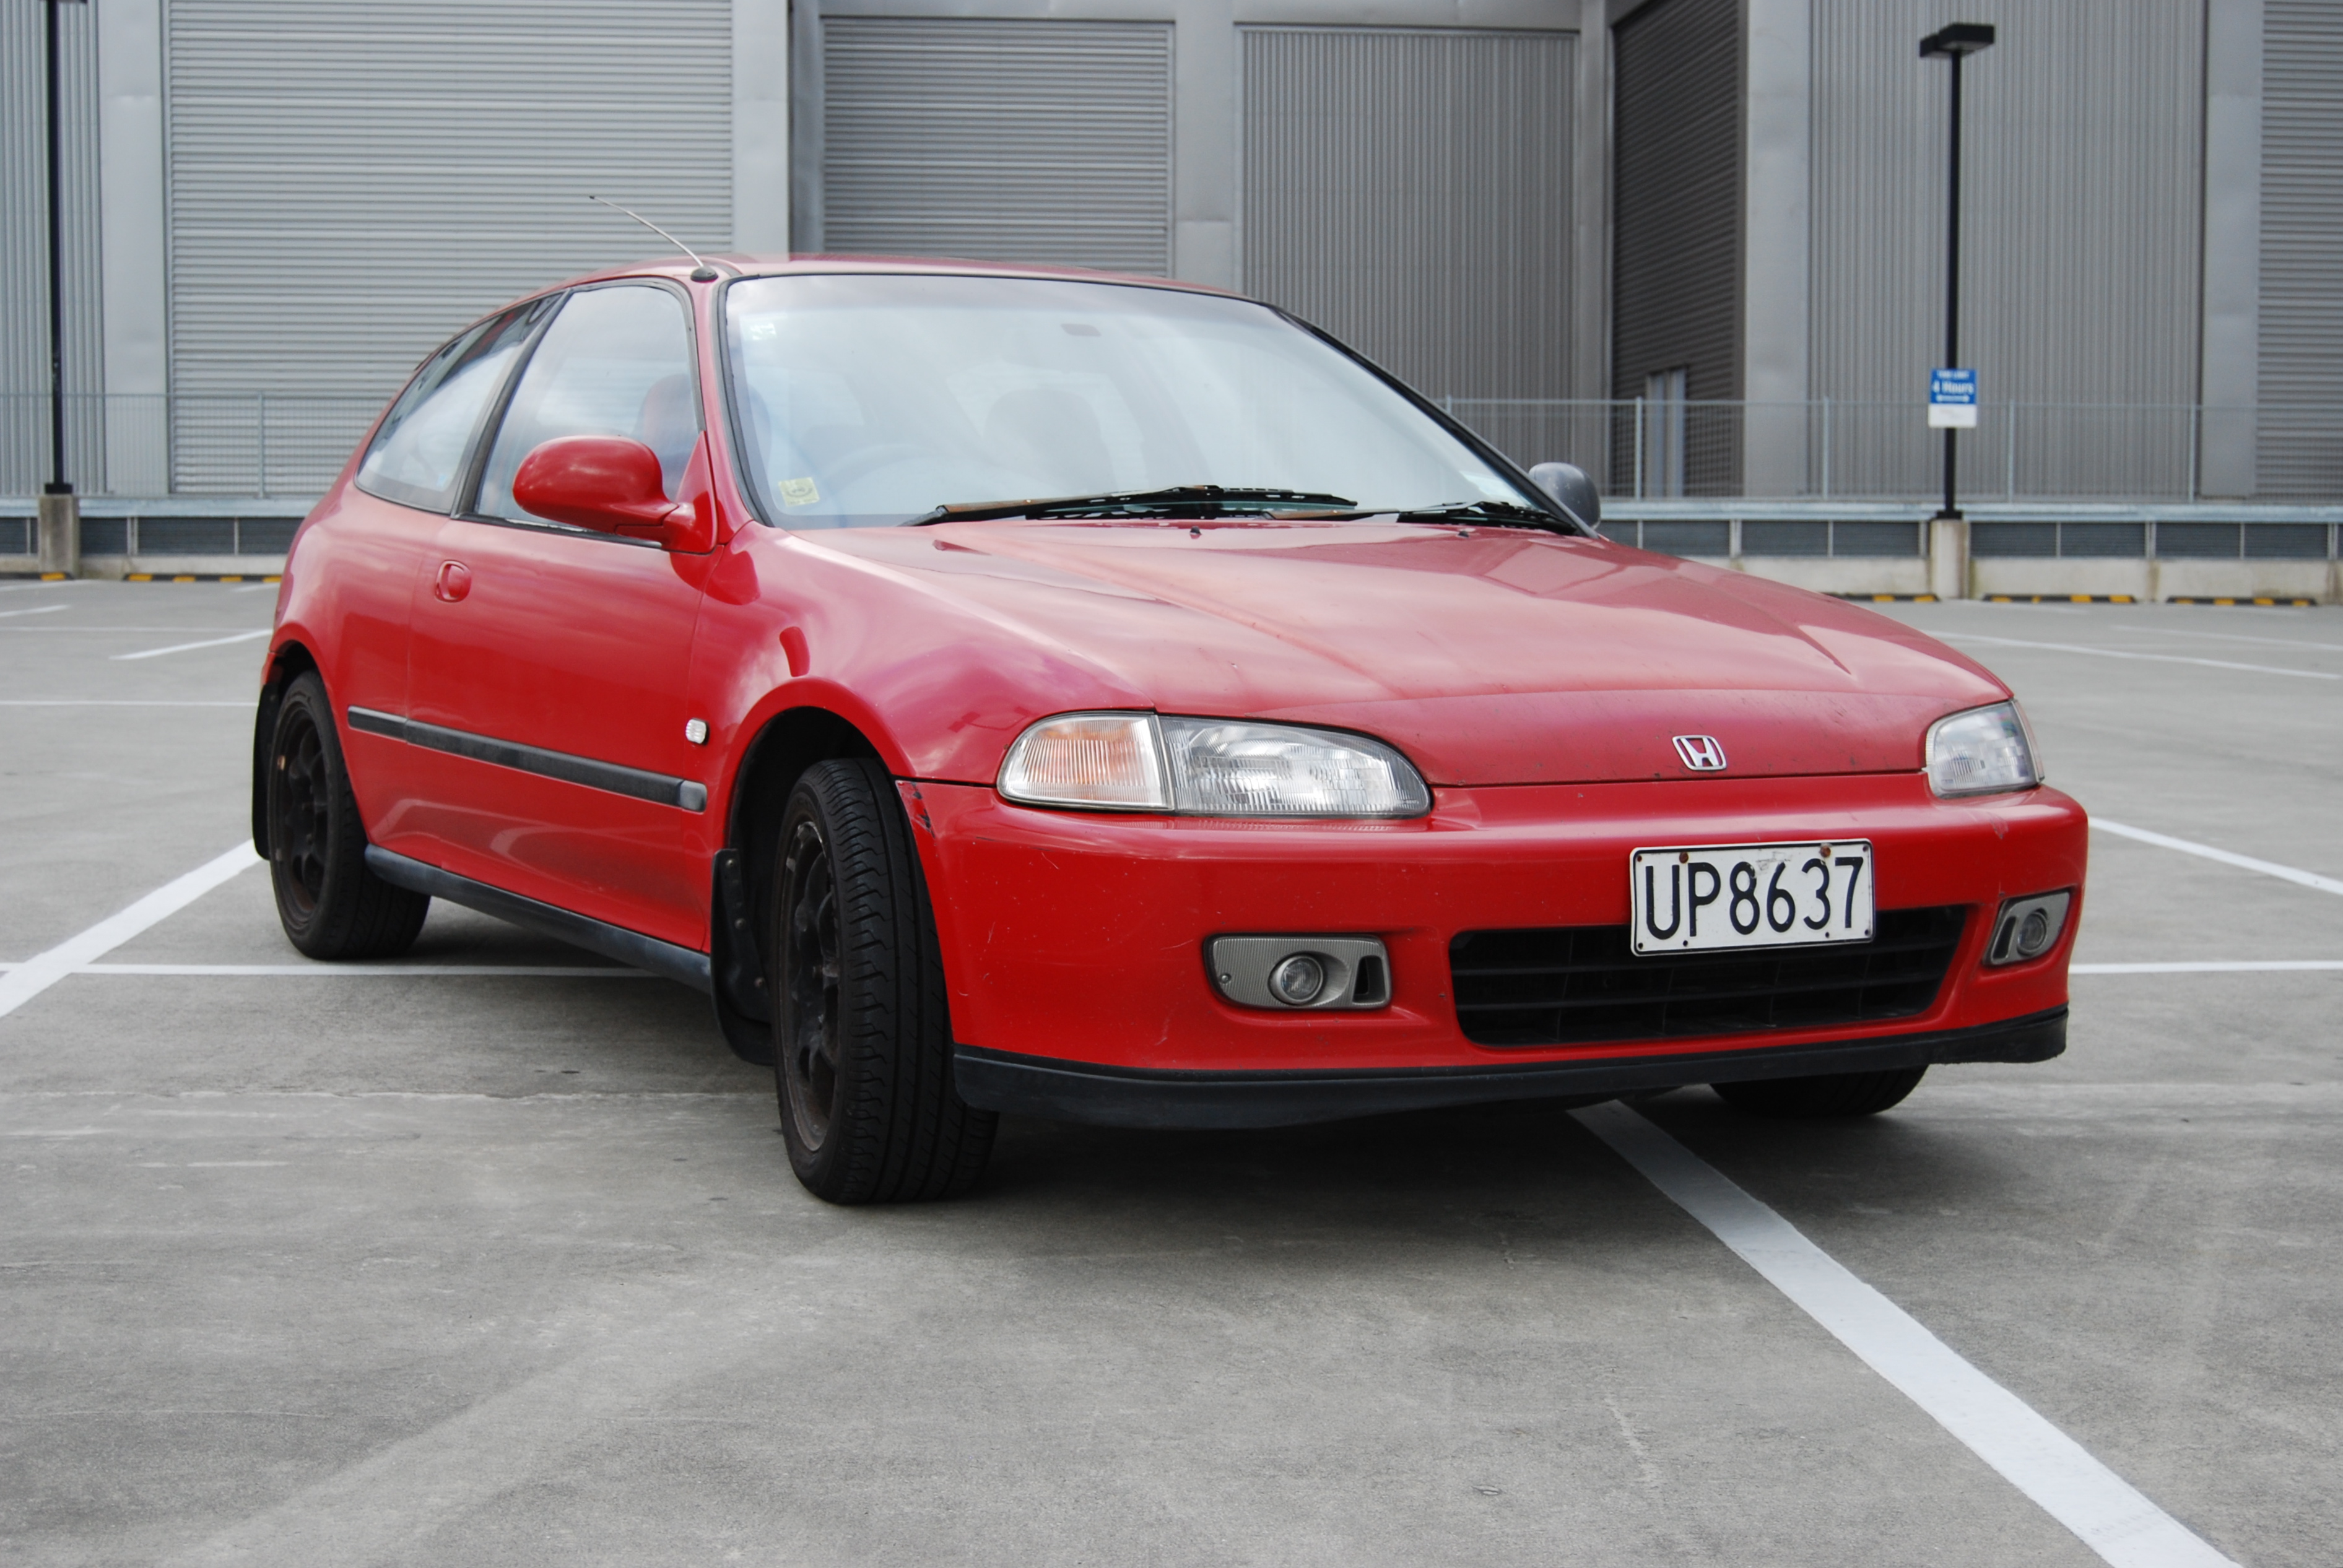 File:Honda Civic GTi 1994 red.jpg